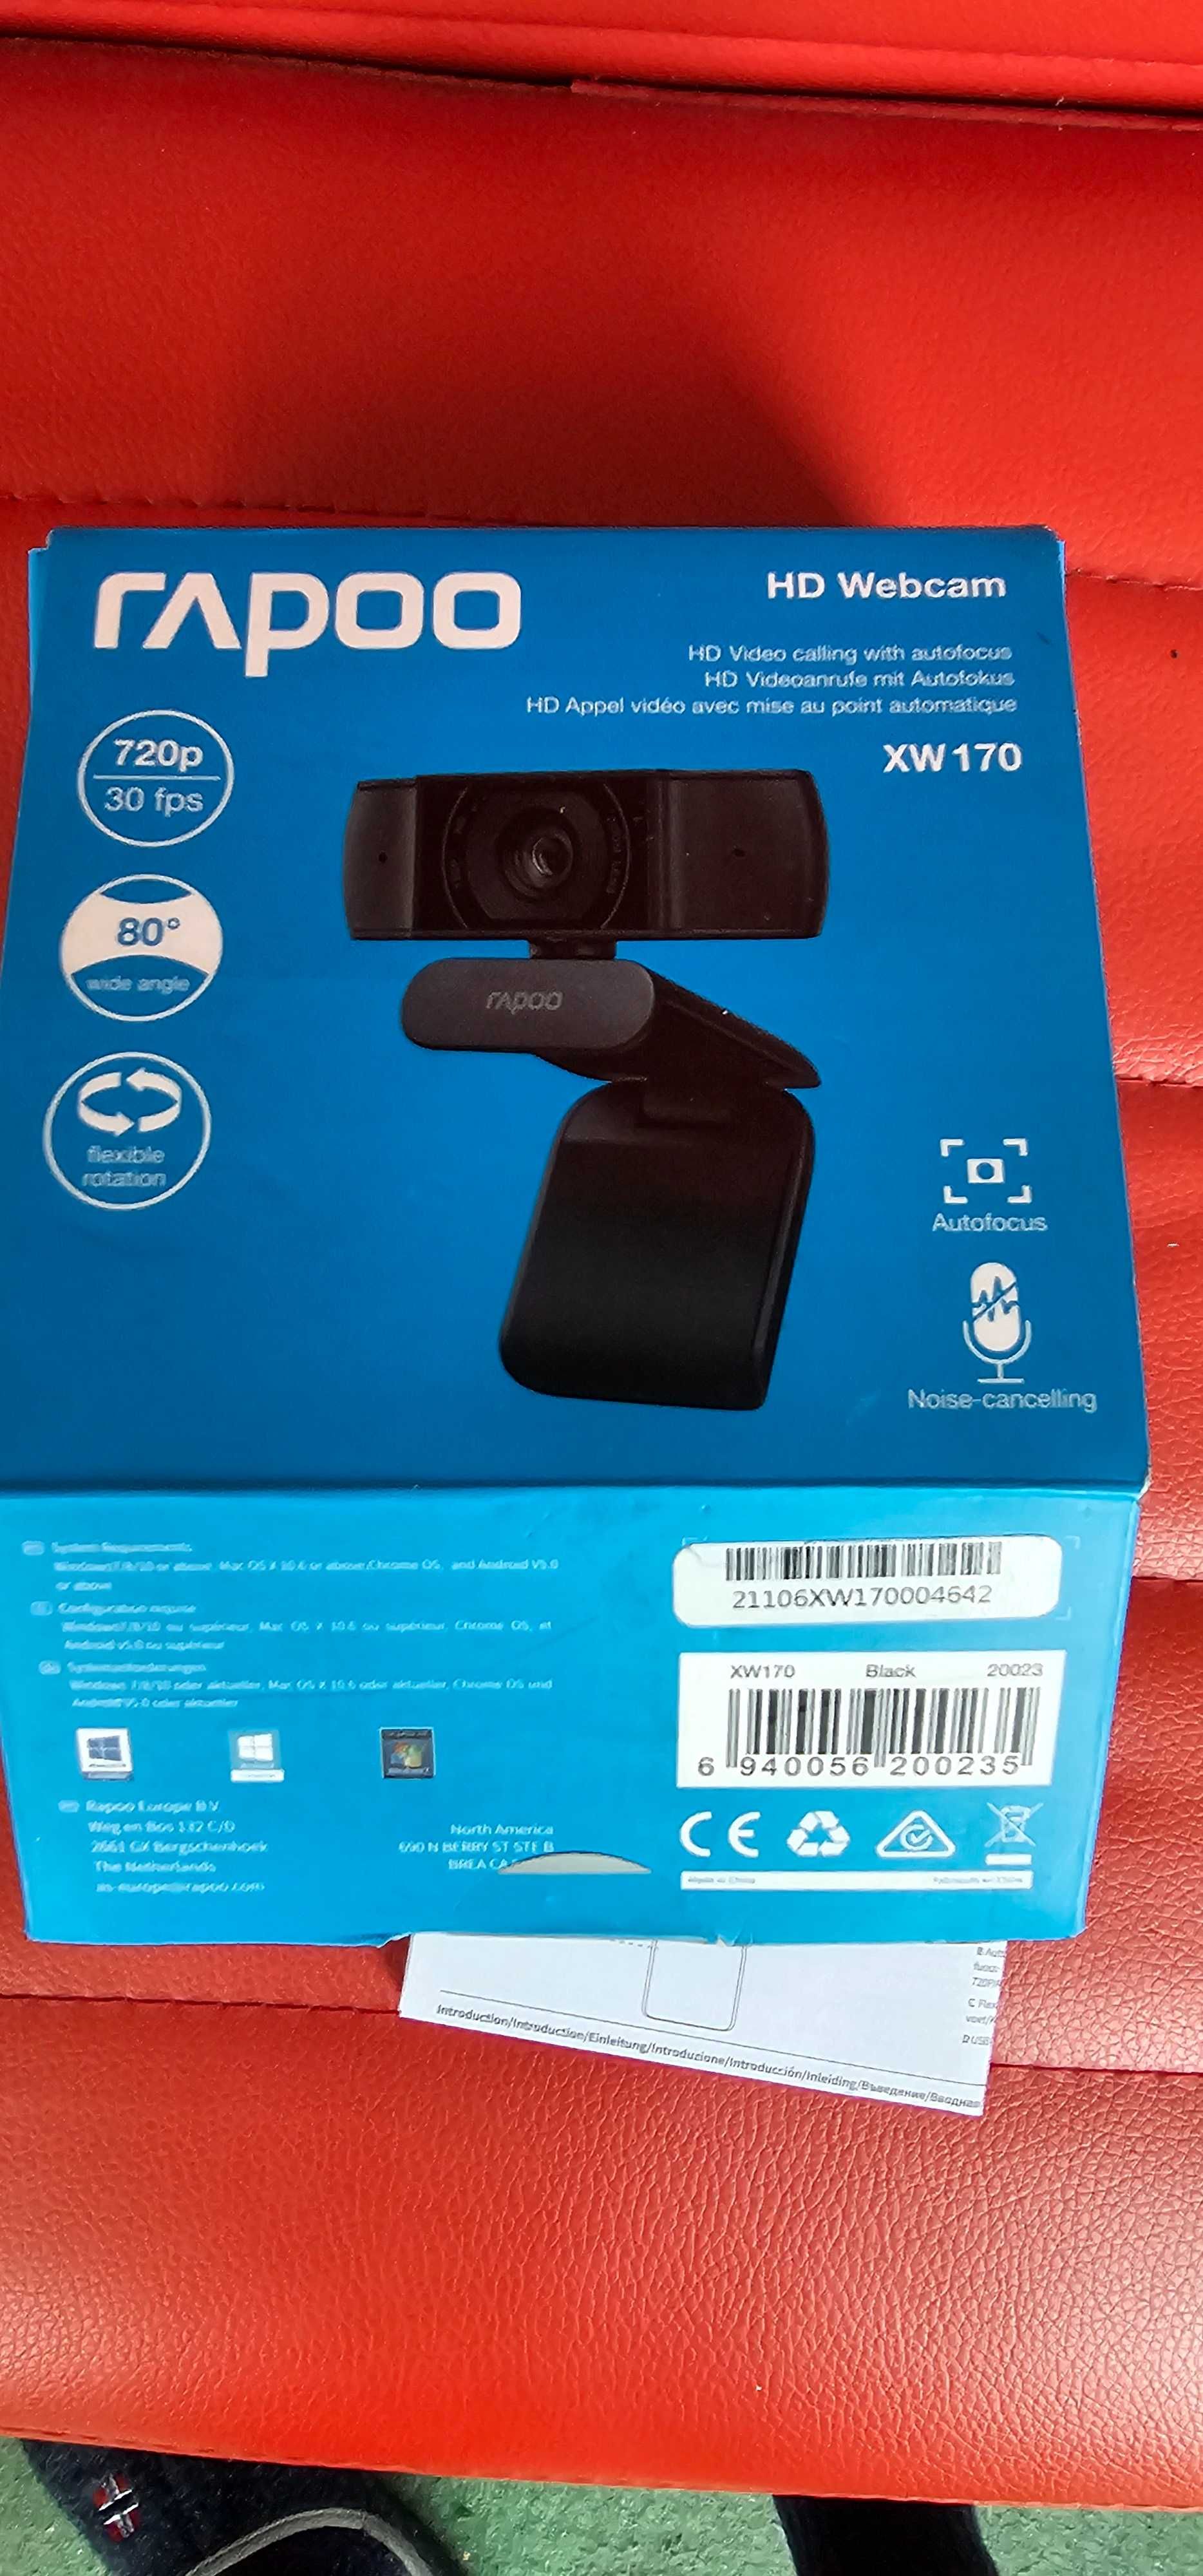 HD webcam rapoo XW 170